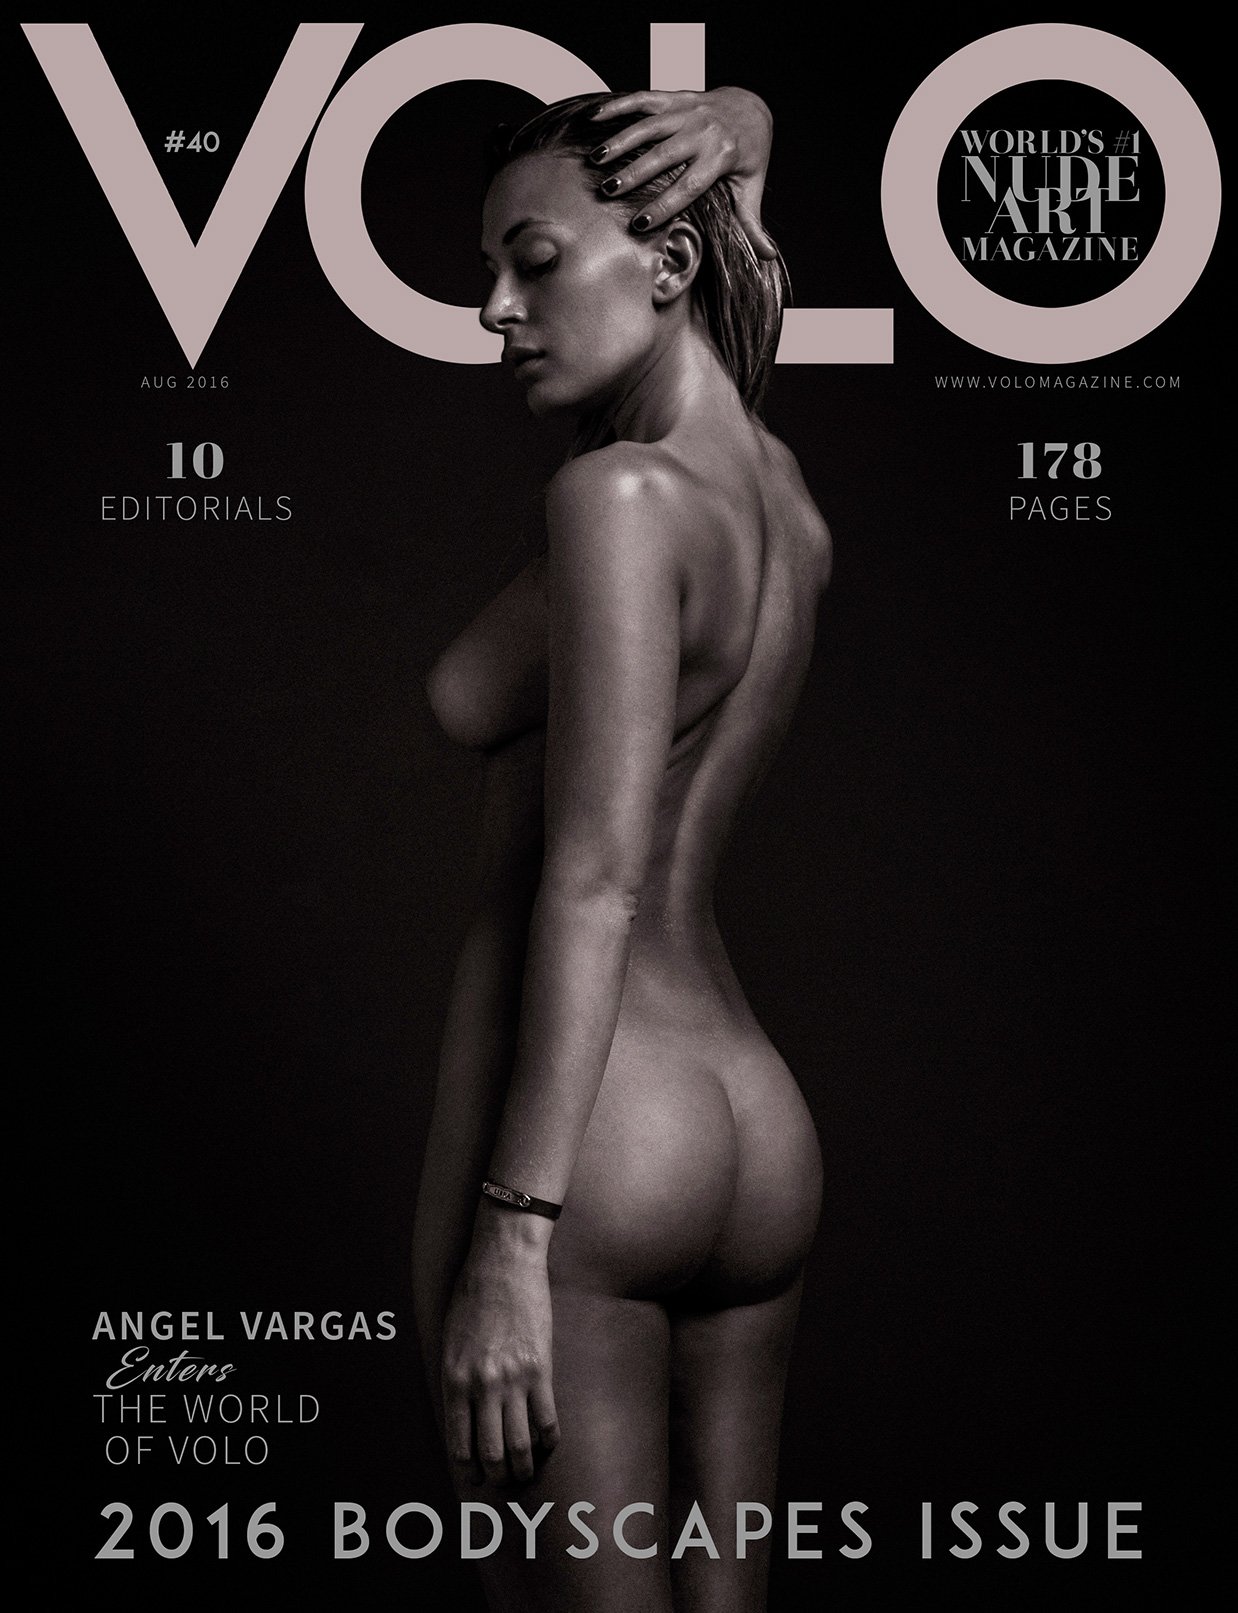 Volo # 40 magazine back issue Volo magizine back copy 